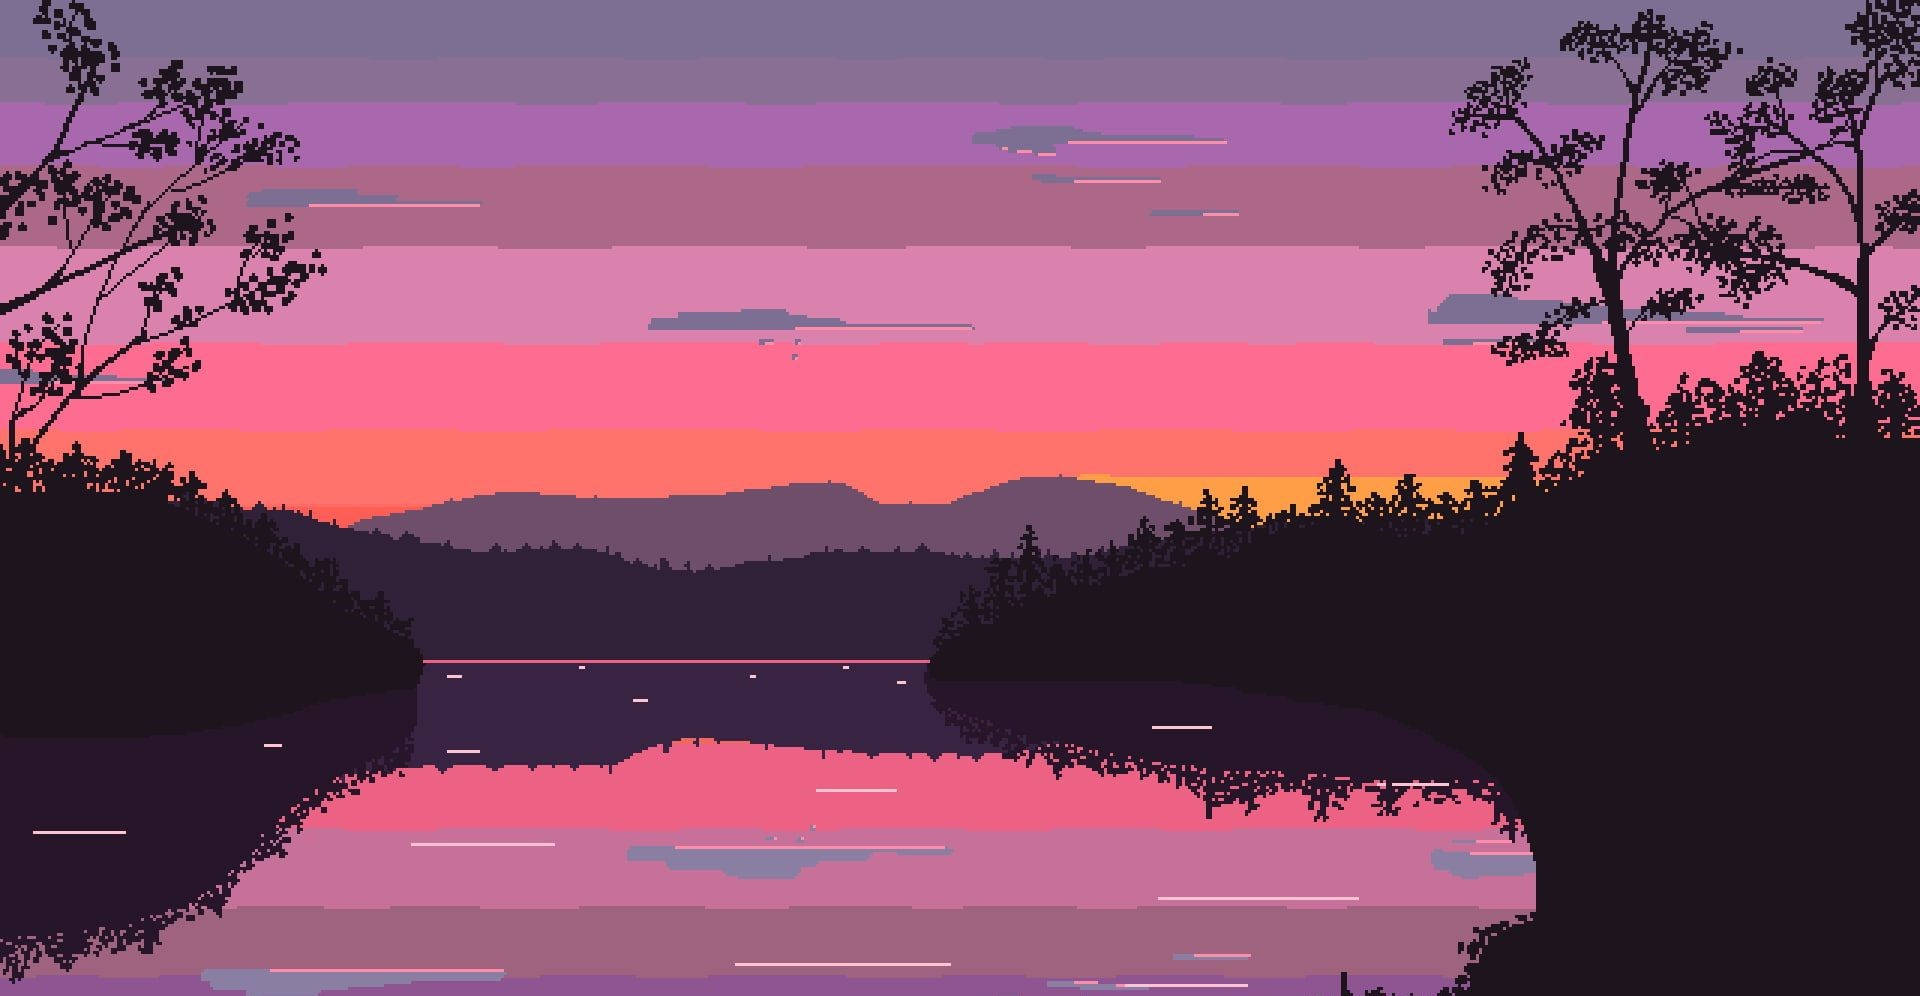 Lagoy Montaña Estética De Arte Pixelado En Alta Definición. Fondo de pantalla